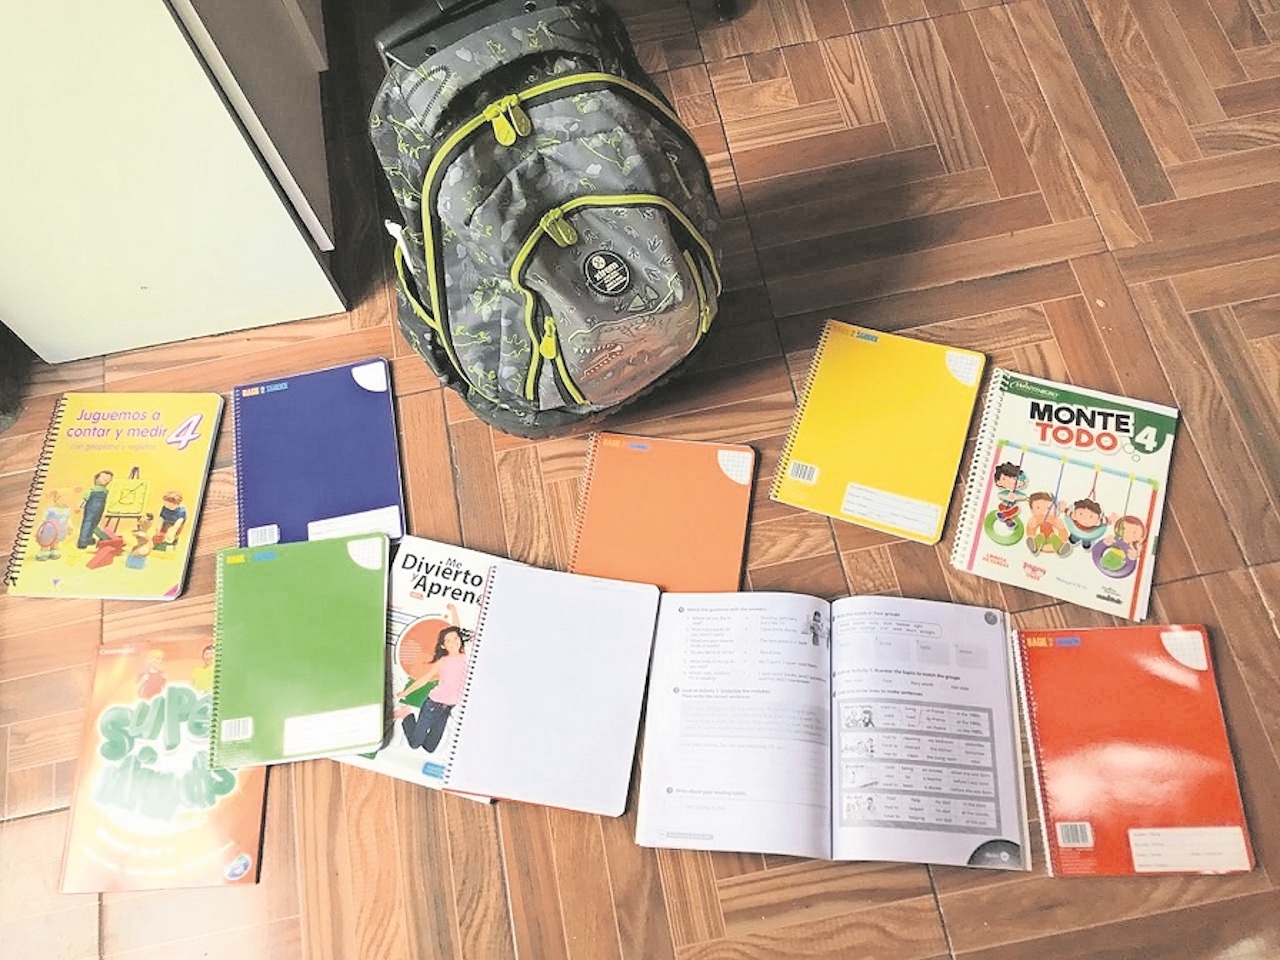 Cuadernos, lápices o colores; dona lo que puedas para llevar útiles a escuelas rurales 